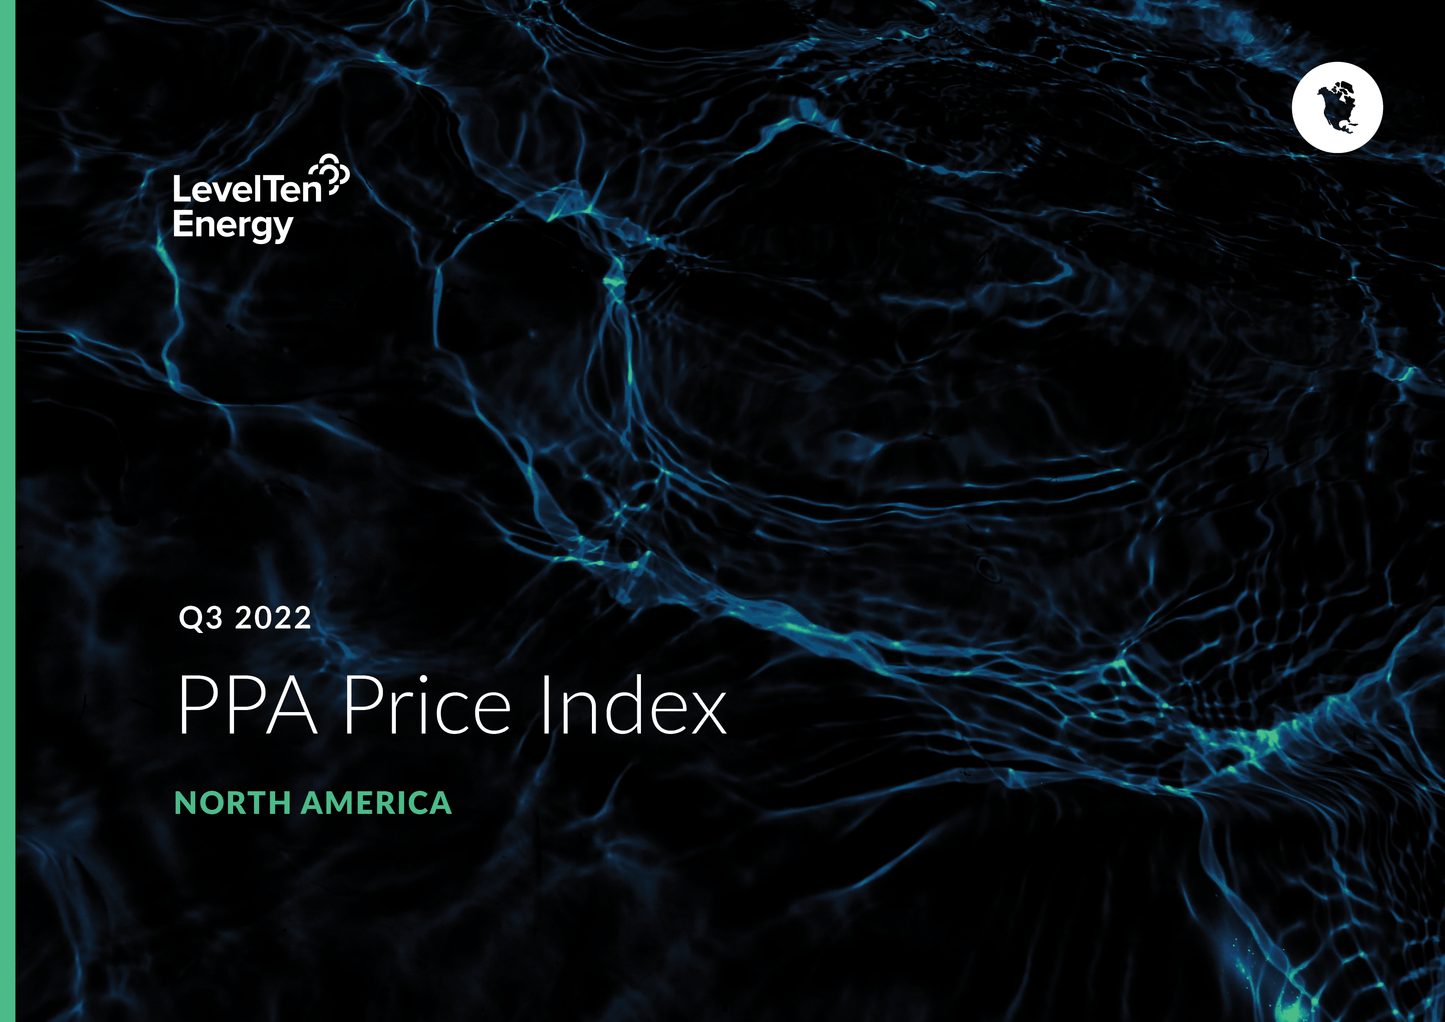 Q3 2022 PPA Price Index - North America